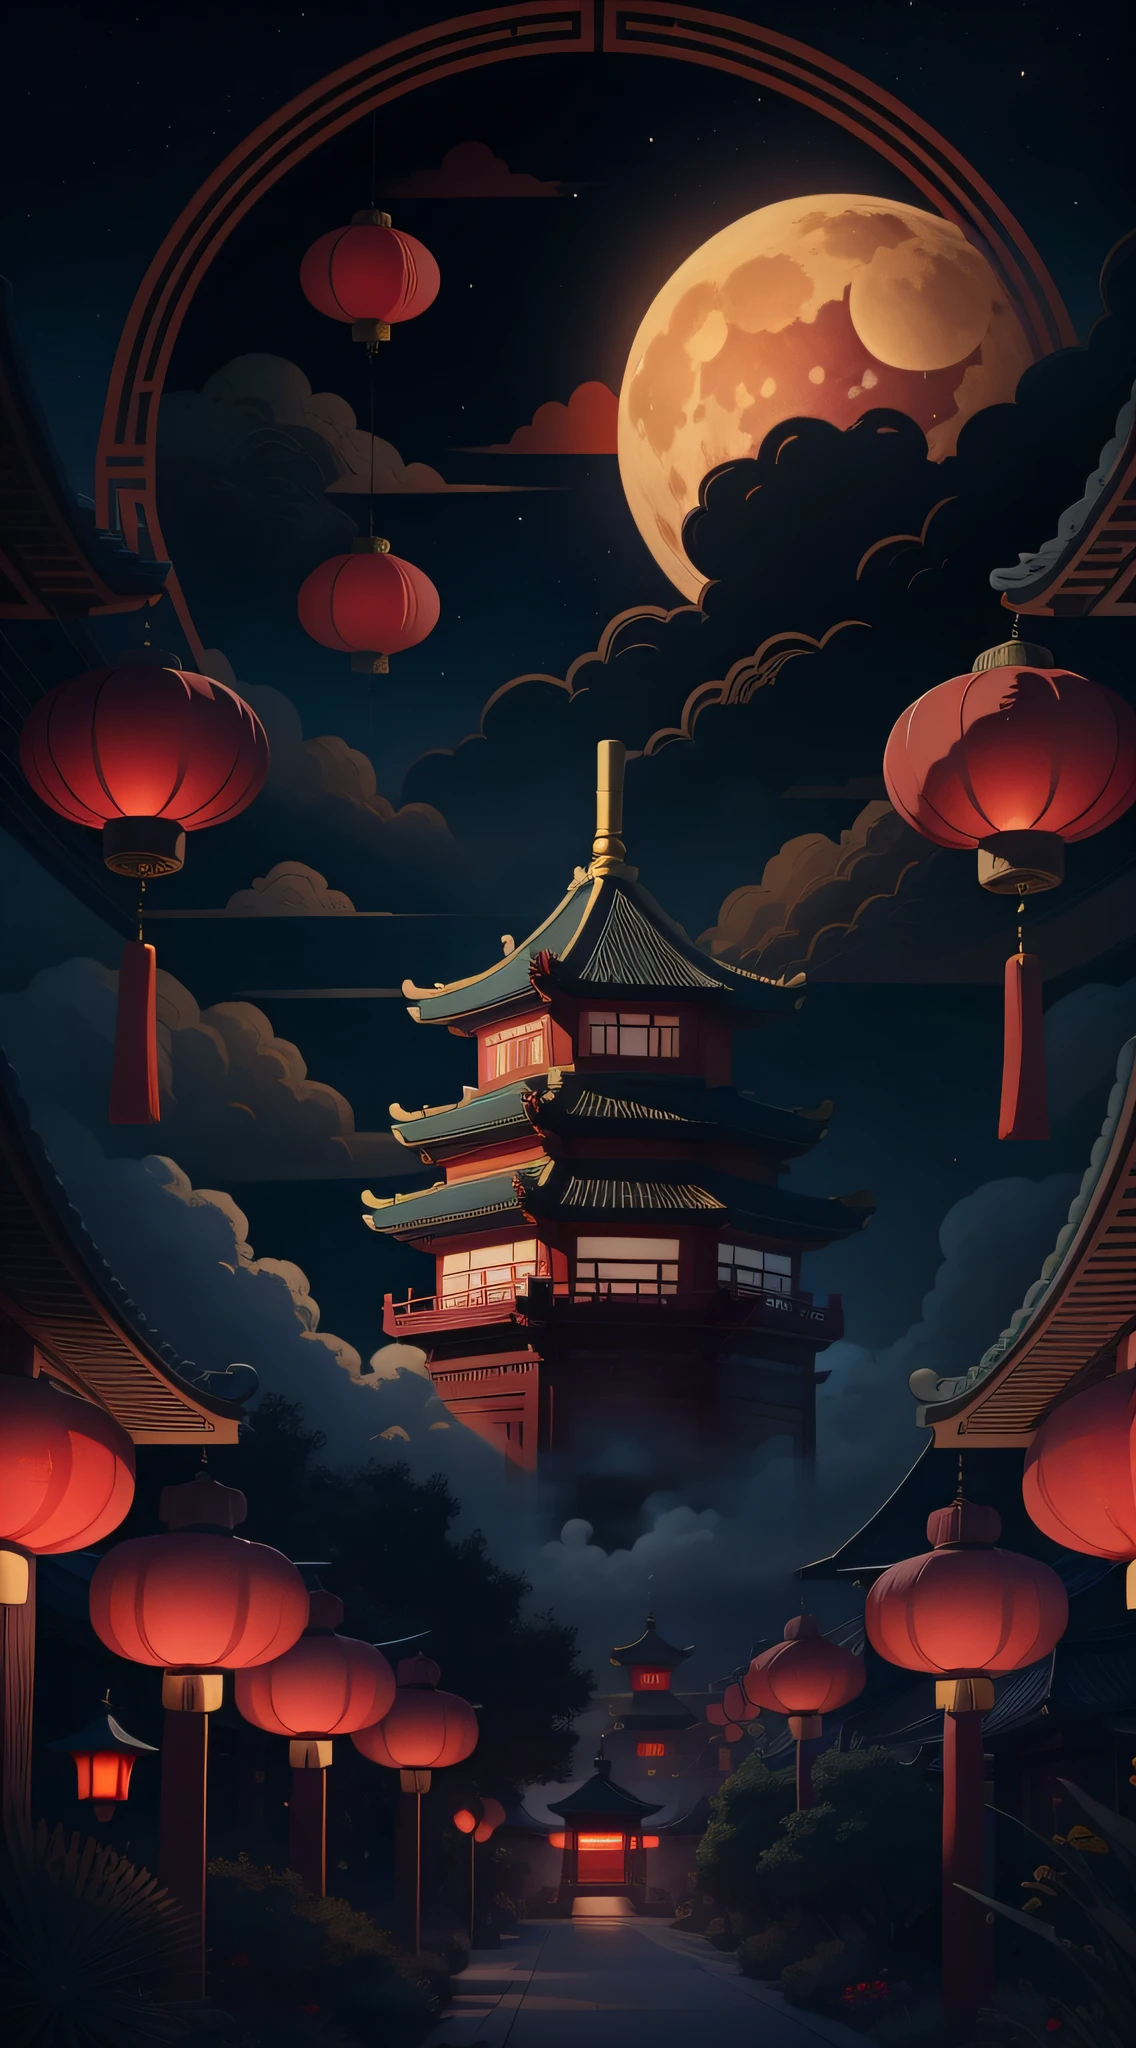 中秋节，月饼， 祥云, 红灯笼, 精美的中国古建筑, 背景是一轮巨大的月亮, 带有矢量线插图, 黄色的、红色和深蓝色色调, 抽象图片, 无人，无人，无人，超现实主义, 清晰的背景趋势, 清晰的轮廓光, 边缘光, 幻想, 斑驳的光, 平面插图,迪士尼风格, 8千, --与 9:16 --q 2 --二二 5